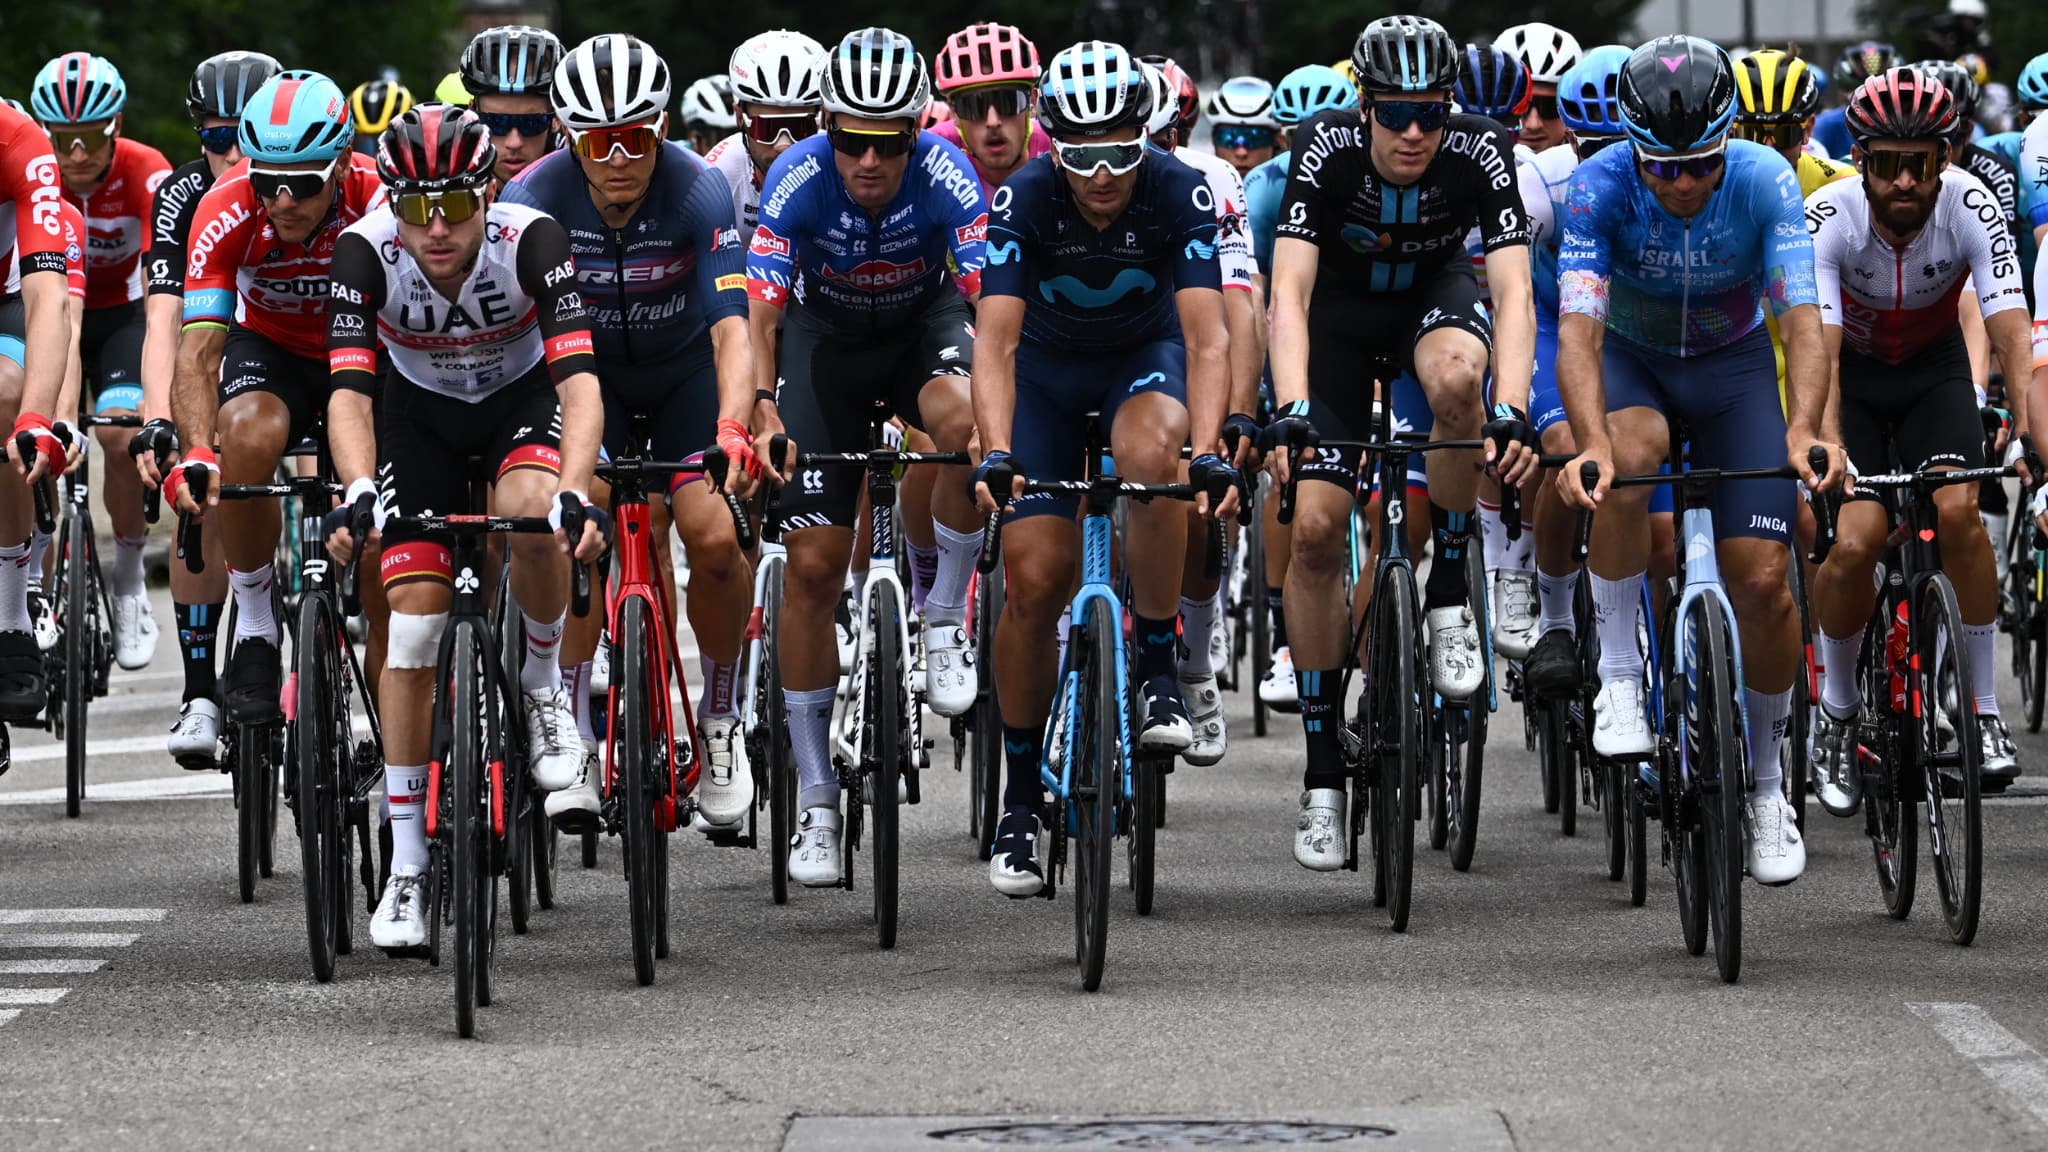 EN DIRECT – Tour de France (8e étape): Pogacar, Bardet et Gaudu pris dans une chute